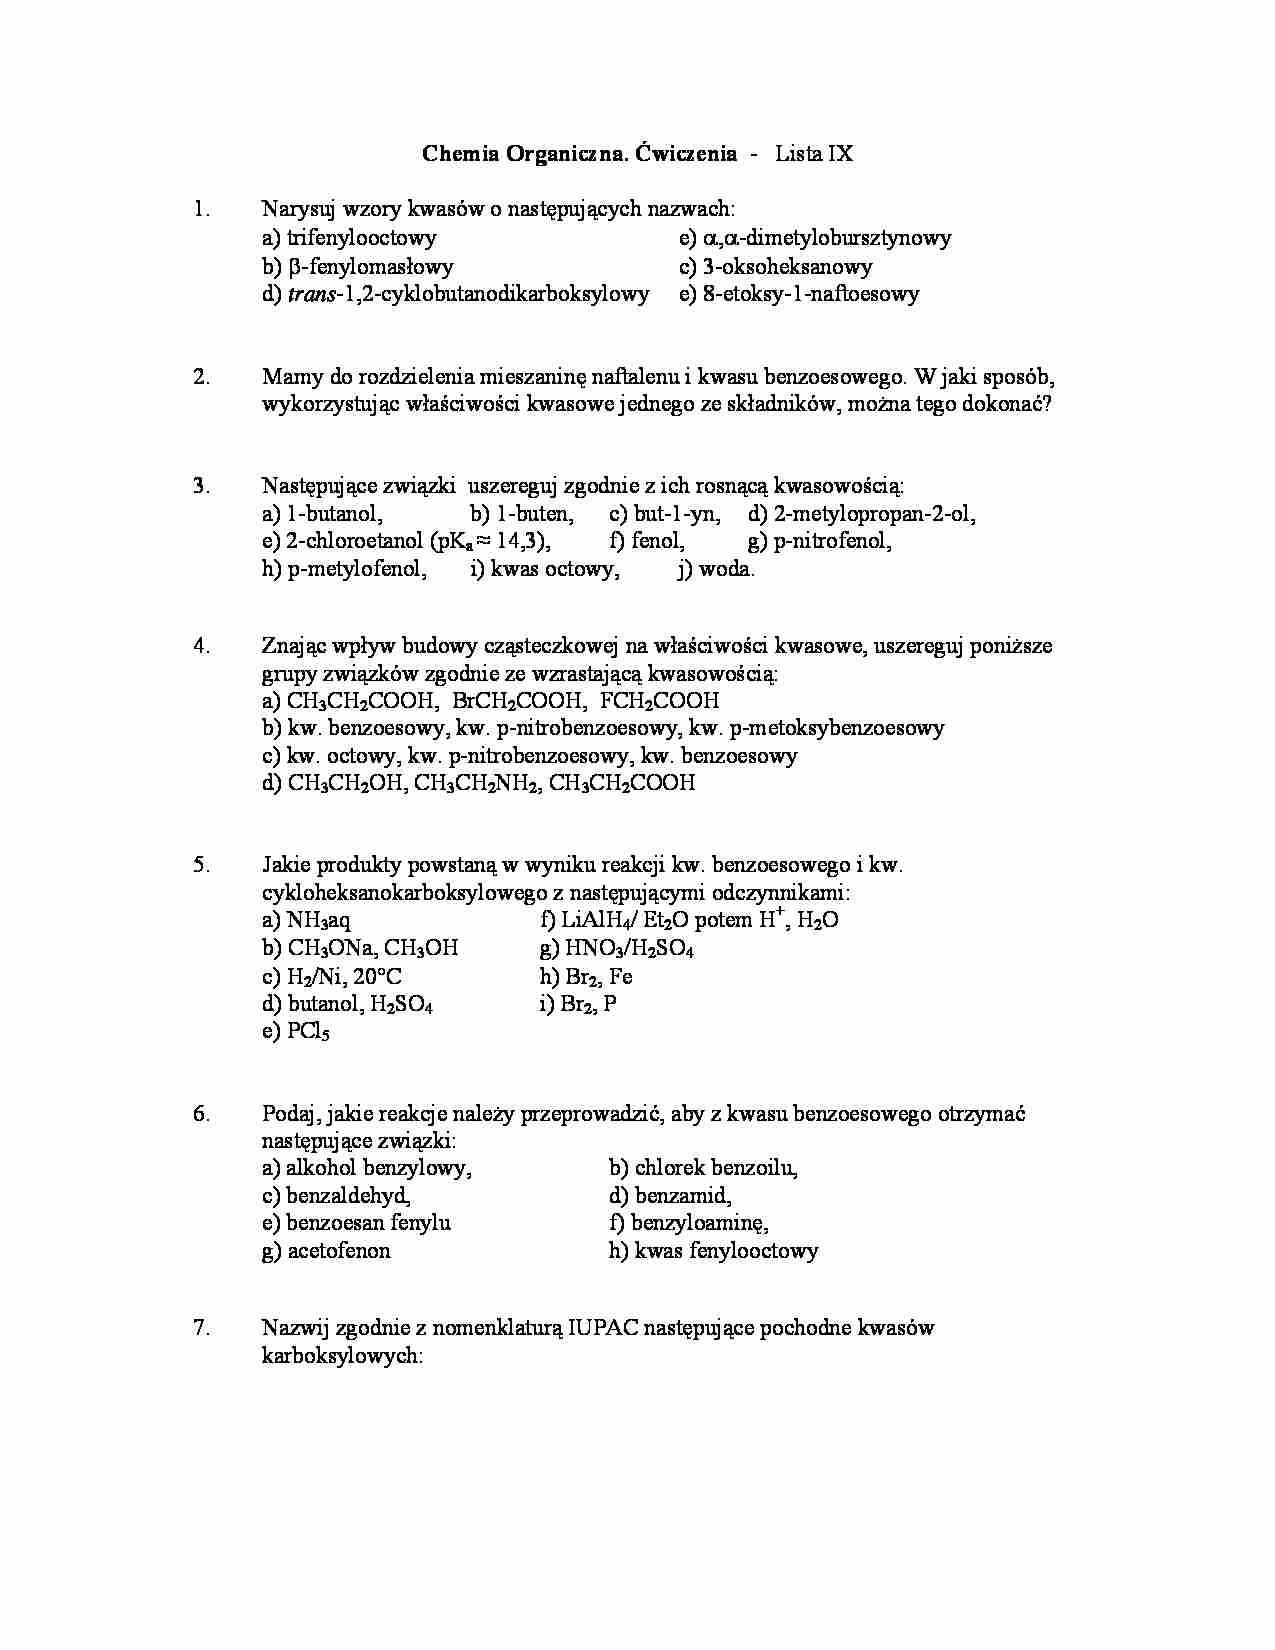 Chemia organiczna - ćwiczenia, lista IX - strona 1